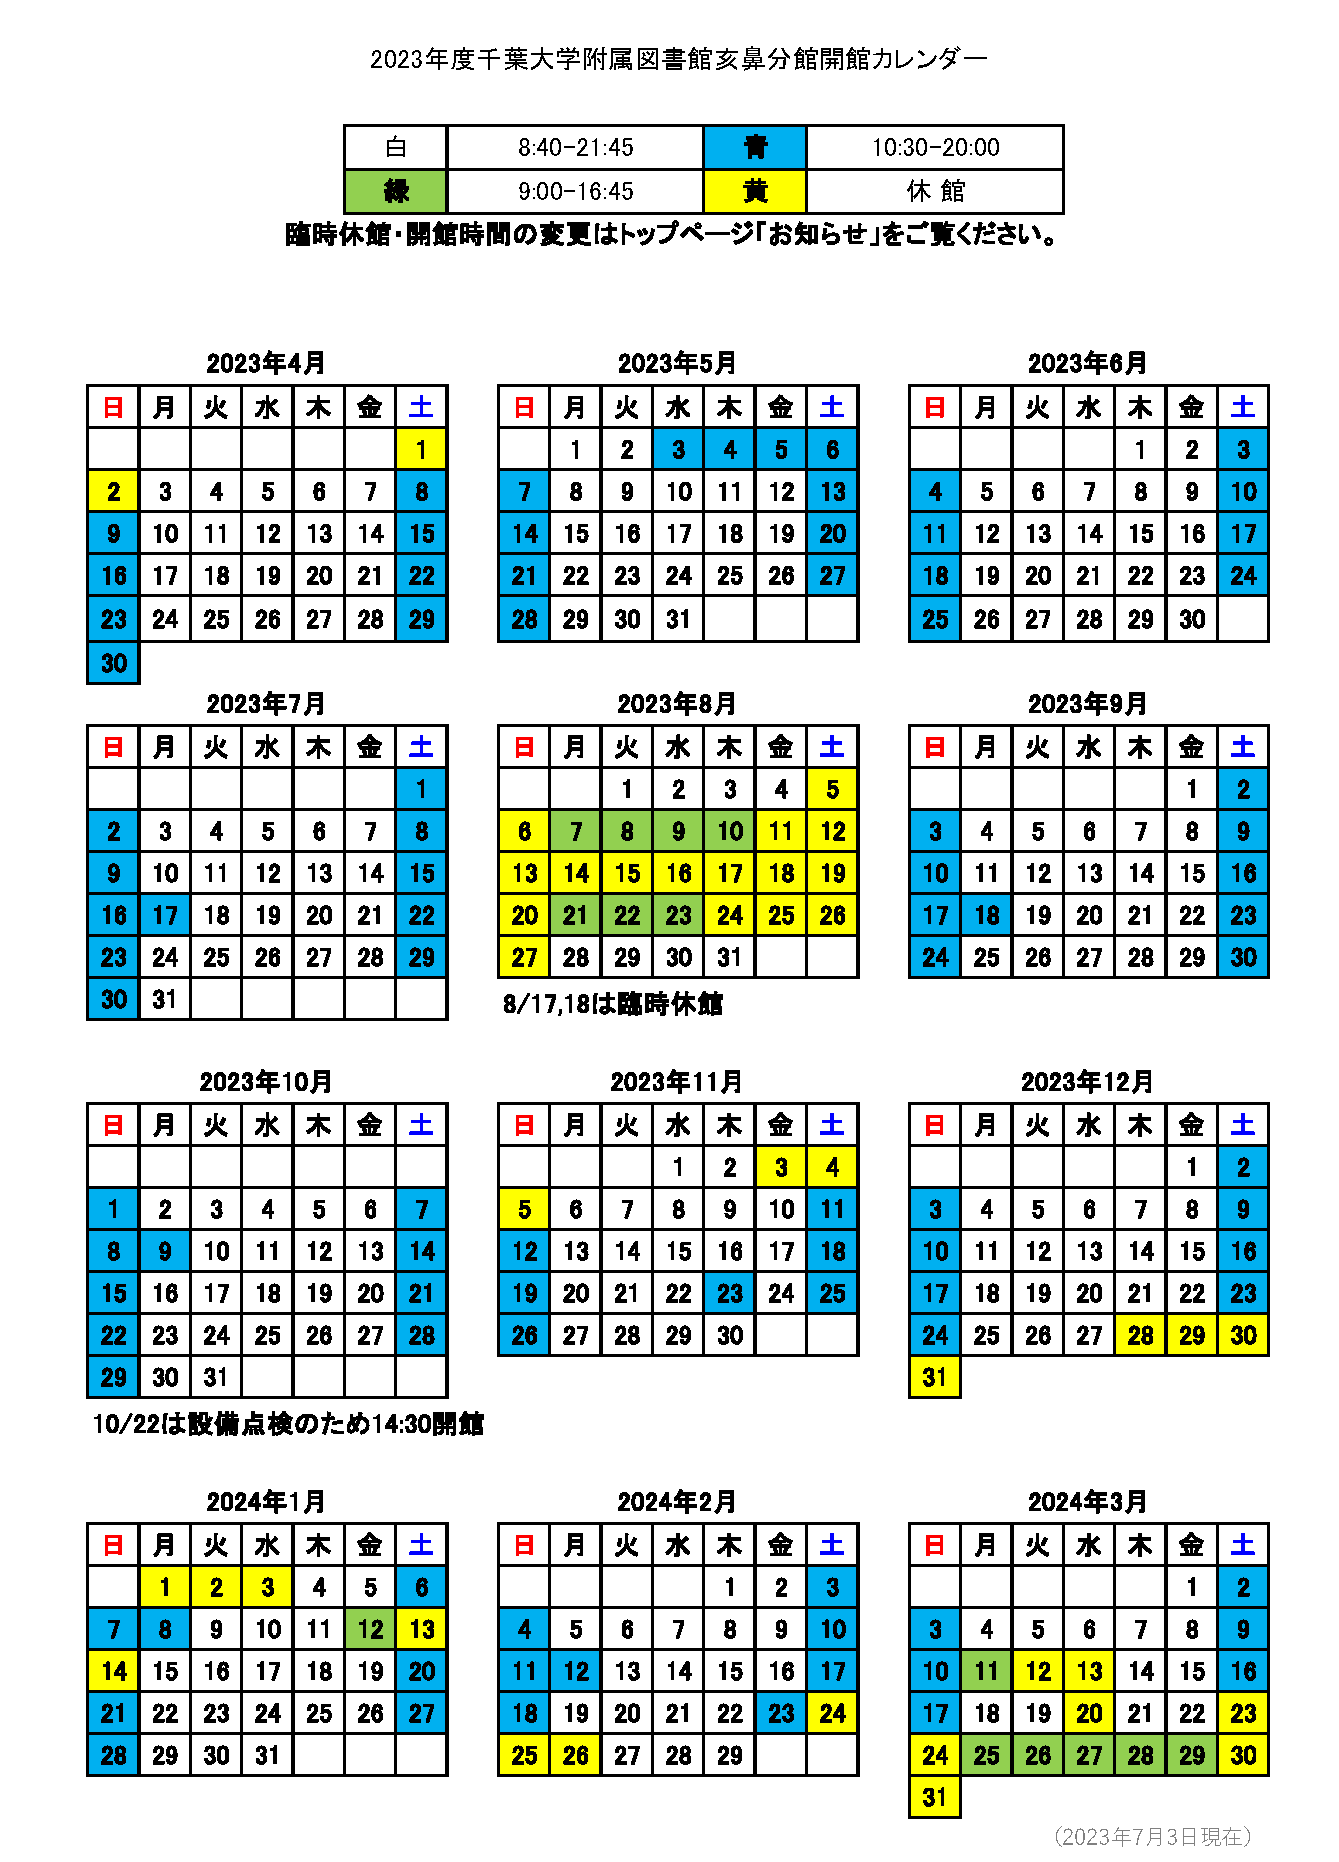 亥鼻分館開館カレンダー2023